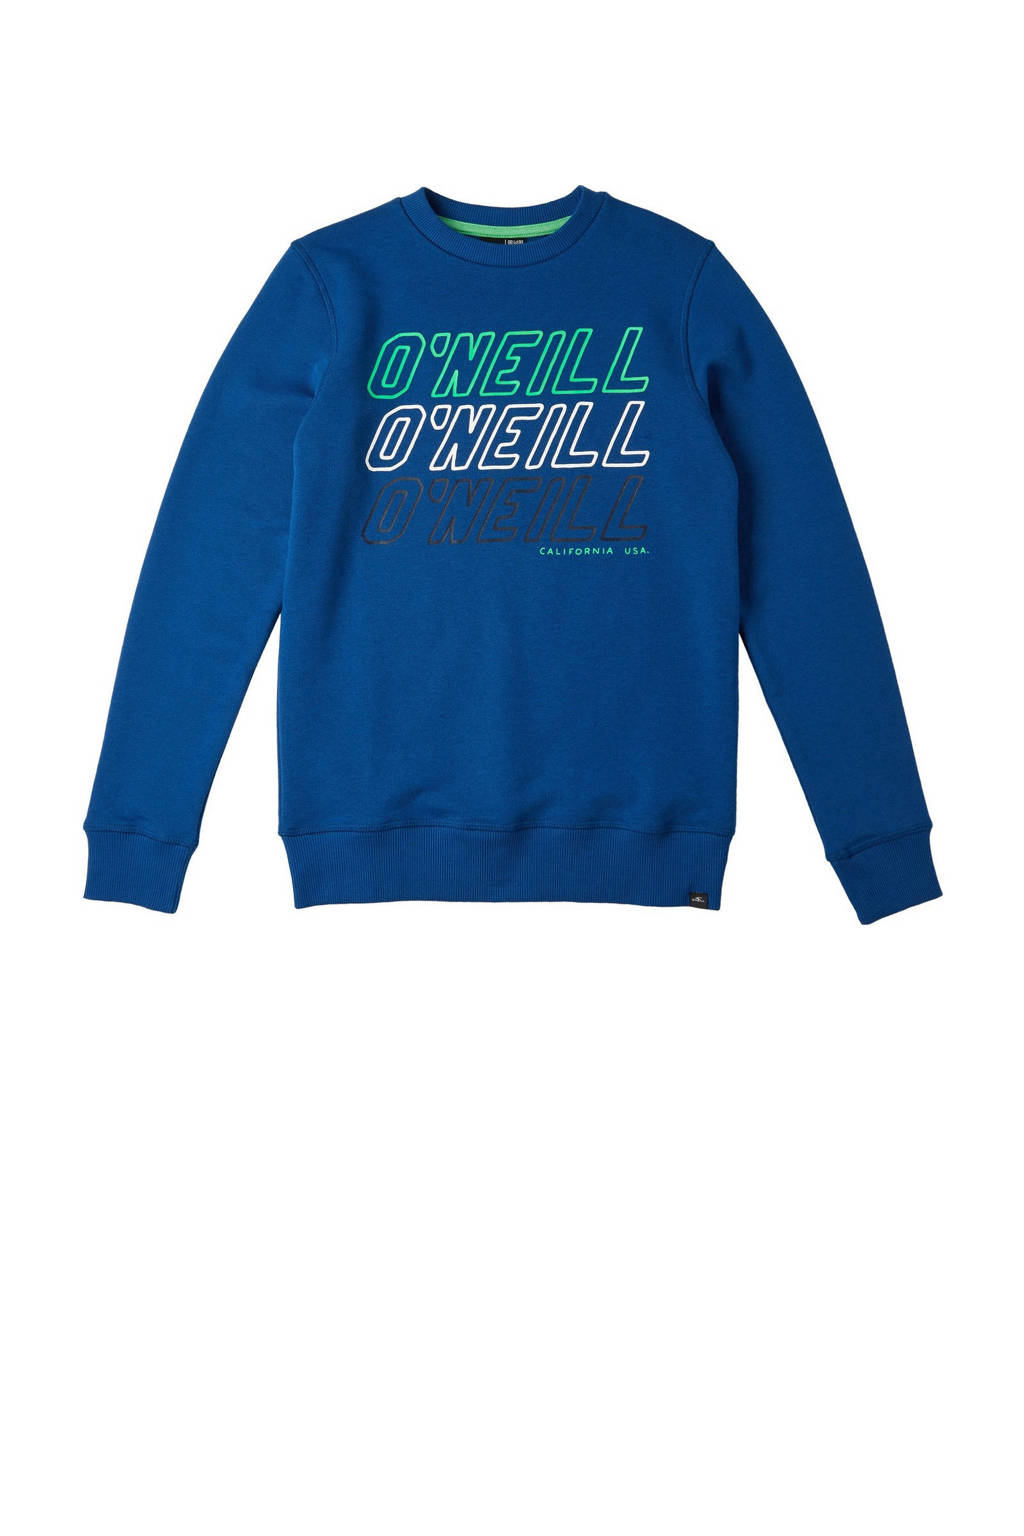 Blauwe jongens O'Neill trui van katoen met logo dessin, lange mouwen en ronde hals